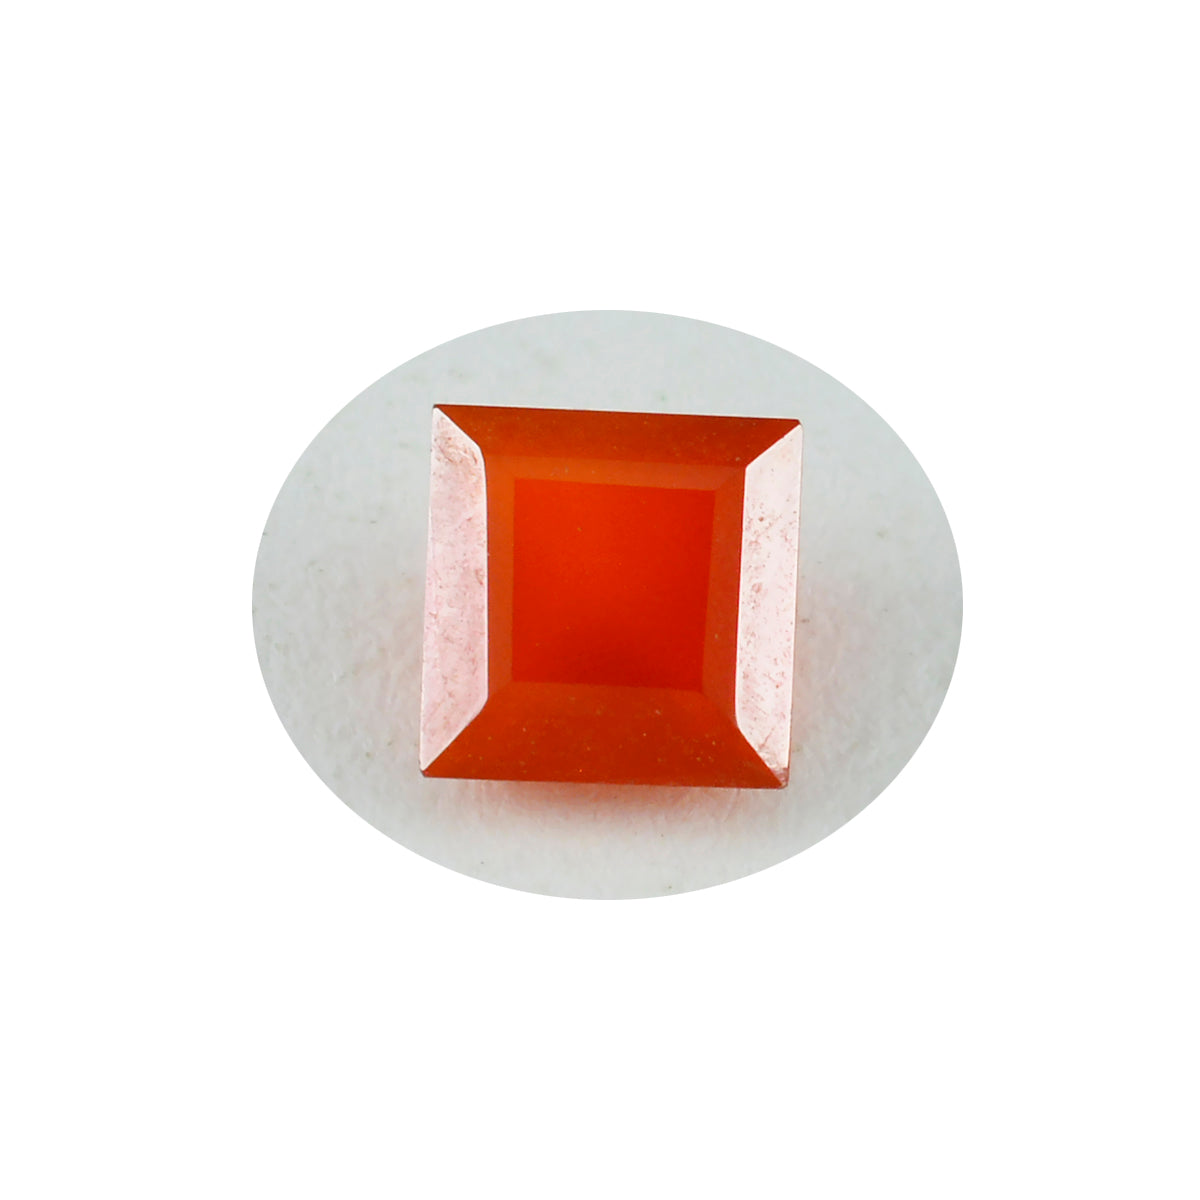 Riyogems 1 pièce onyx rouge véritable à facettes 10x10mm forme carrée belle qualité pierre en vrac